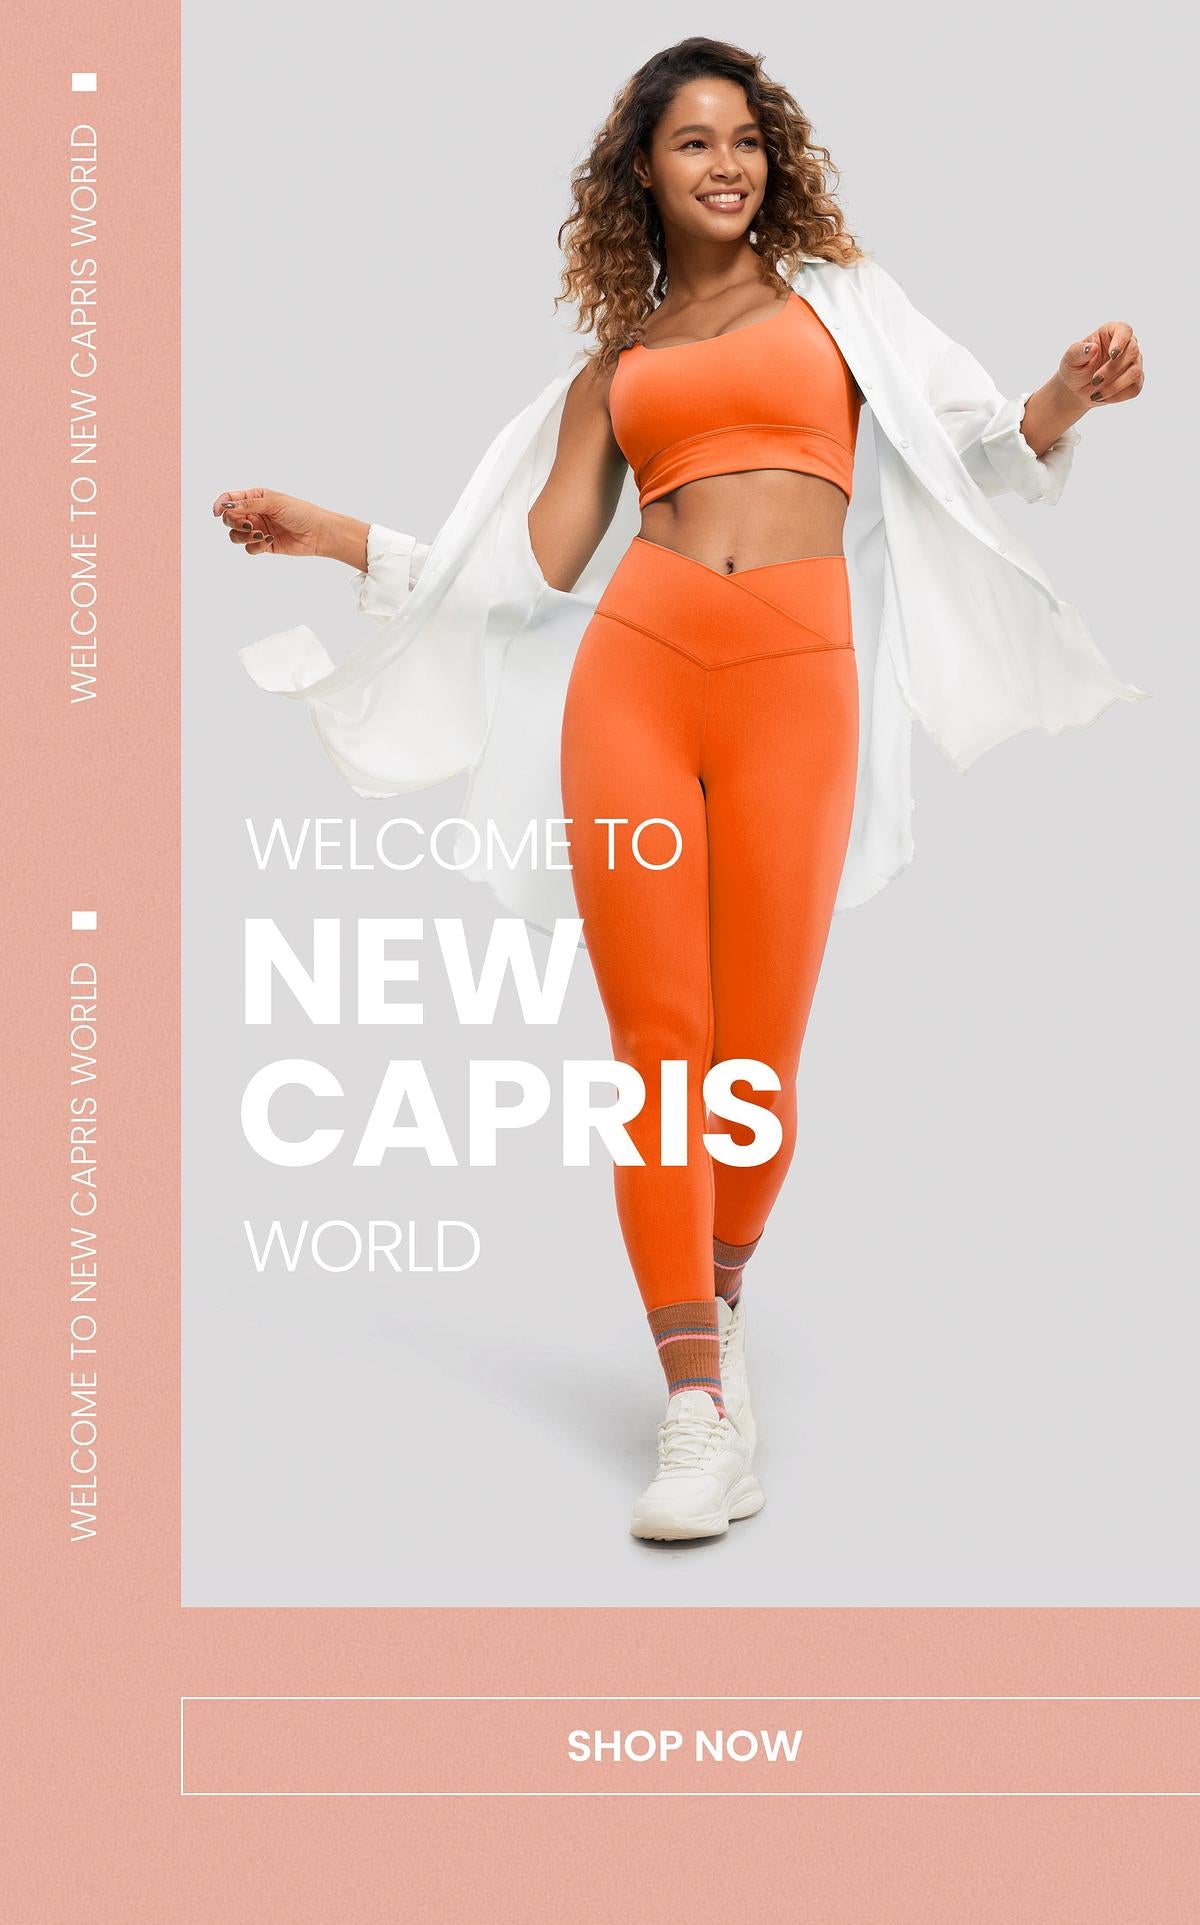 Discover New Capris - Crz Yoga